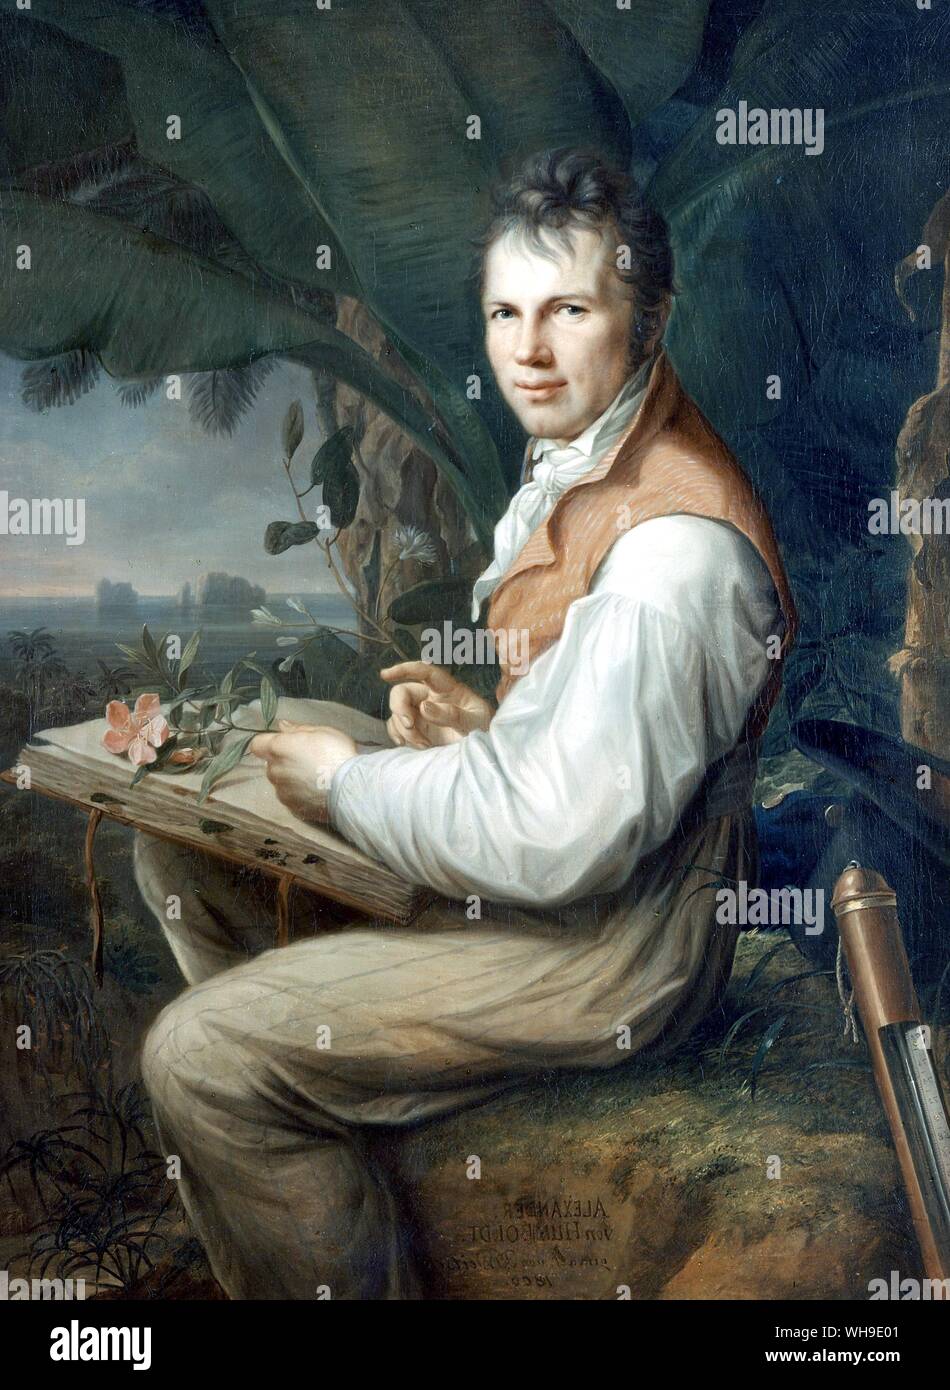 Humboldt in Venezuela, Anlage drücken Sie auf seinem Schoß, Hut und Barometer hinter ihm. Gemälde von F. G. Weitsch Übersetzung: Helge Moog. Stockfoto